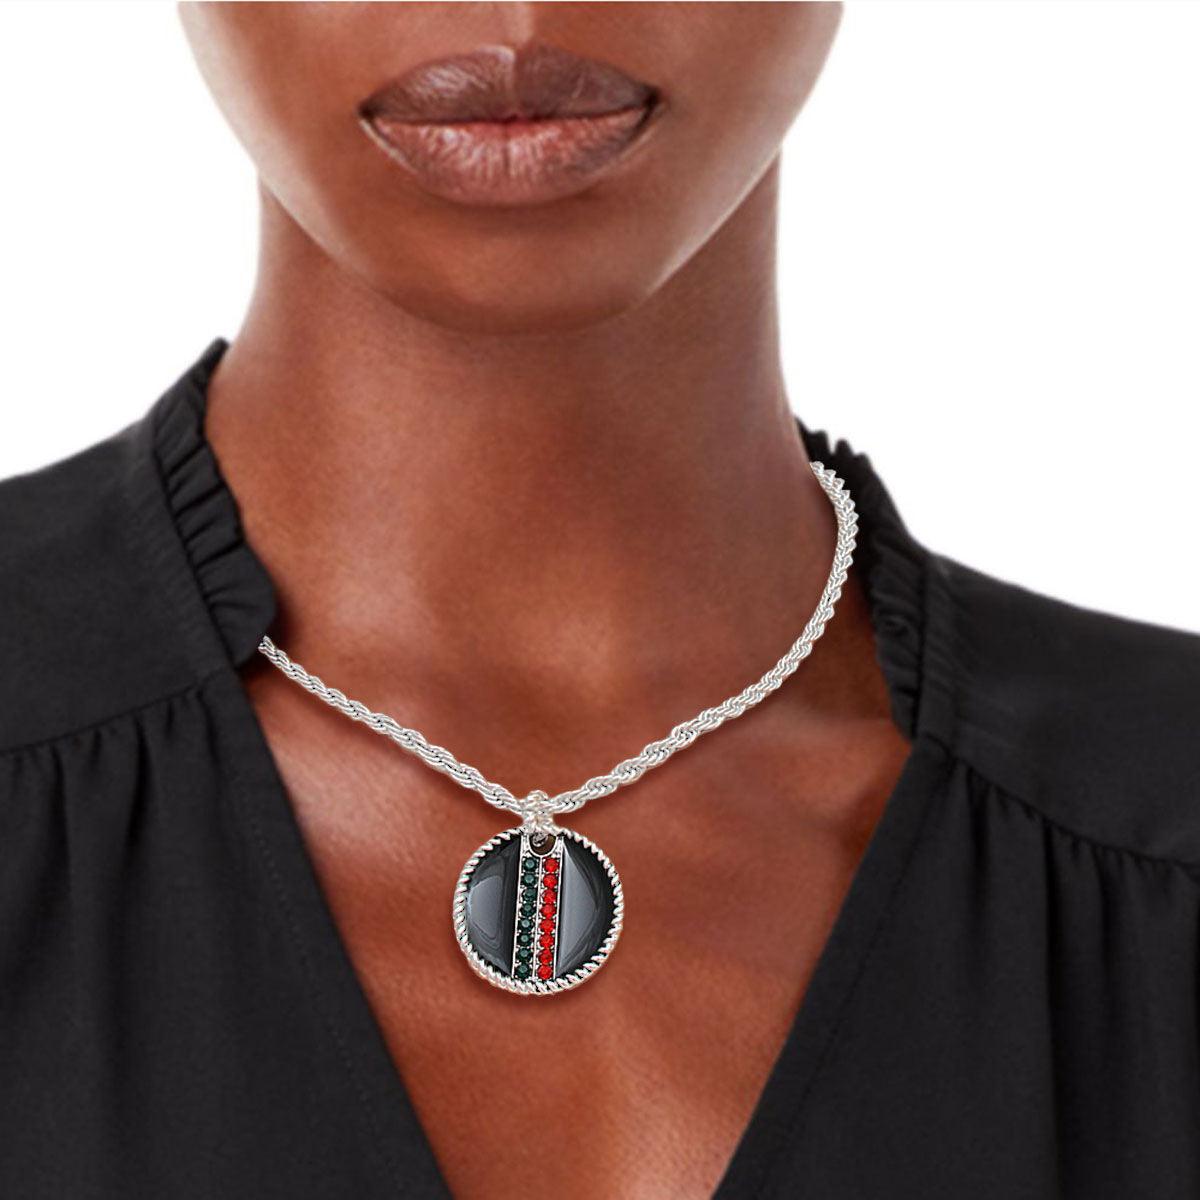 Rhinestone Embellished Fashion Necklace: Silver and Black Medallion